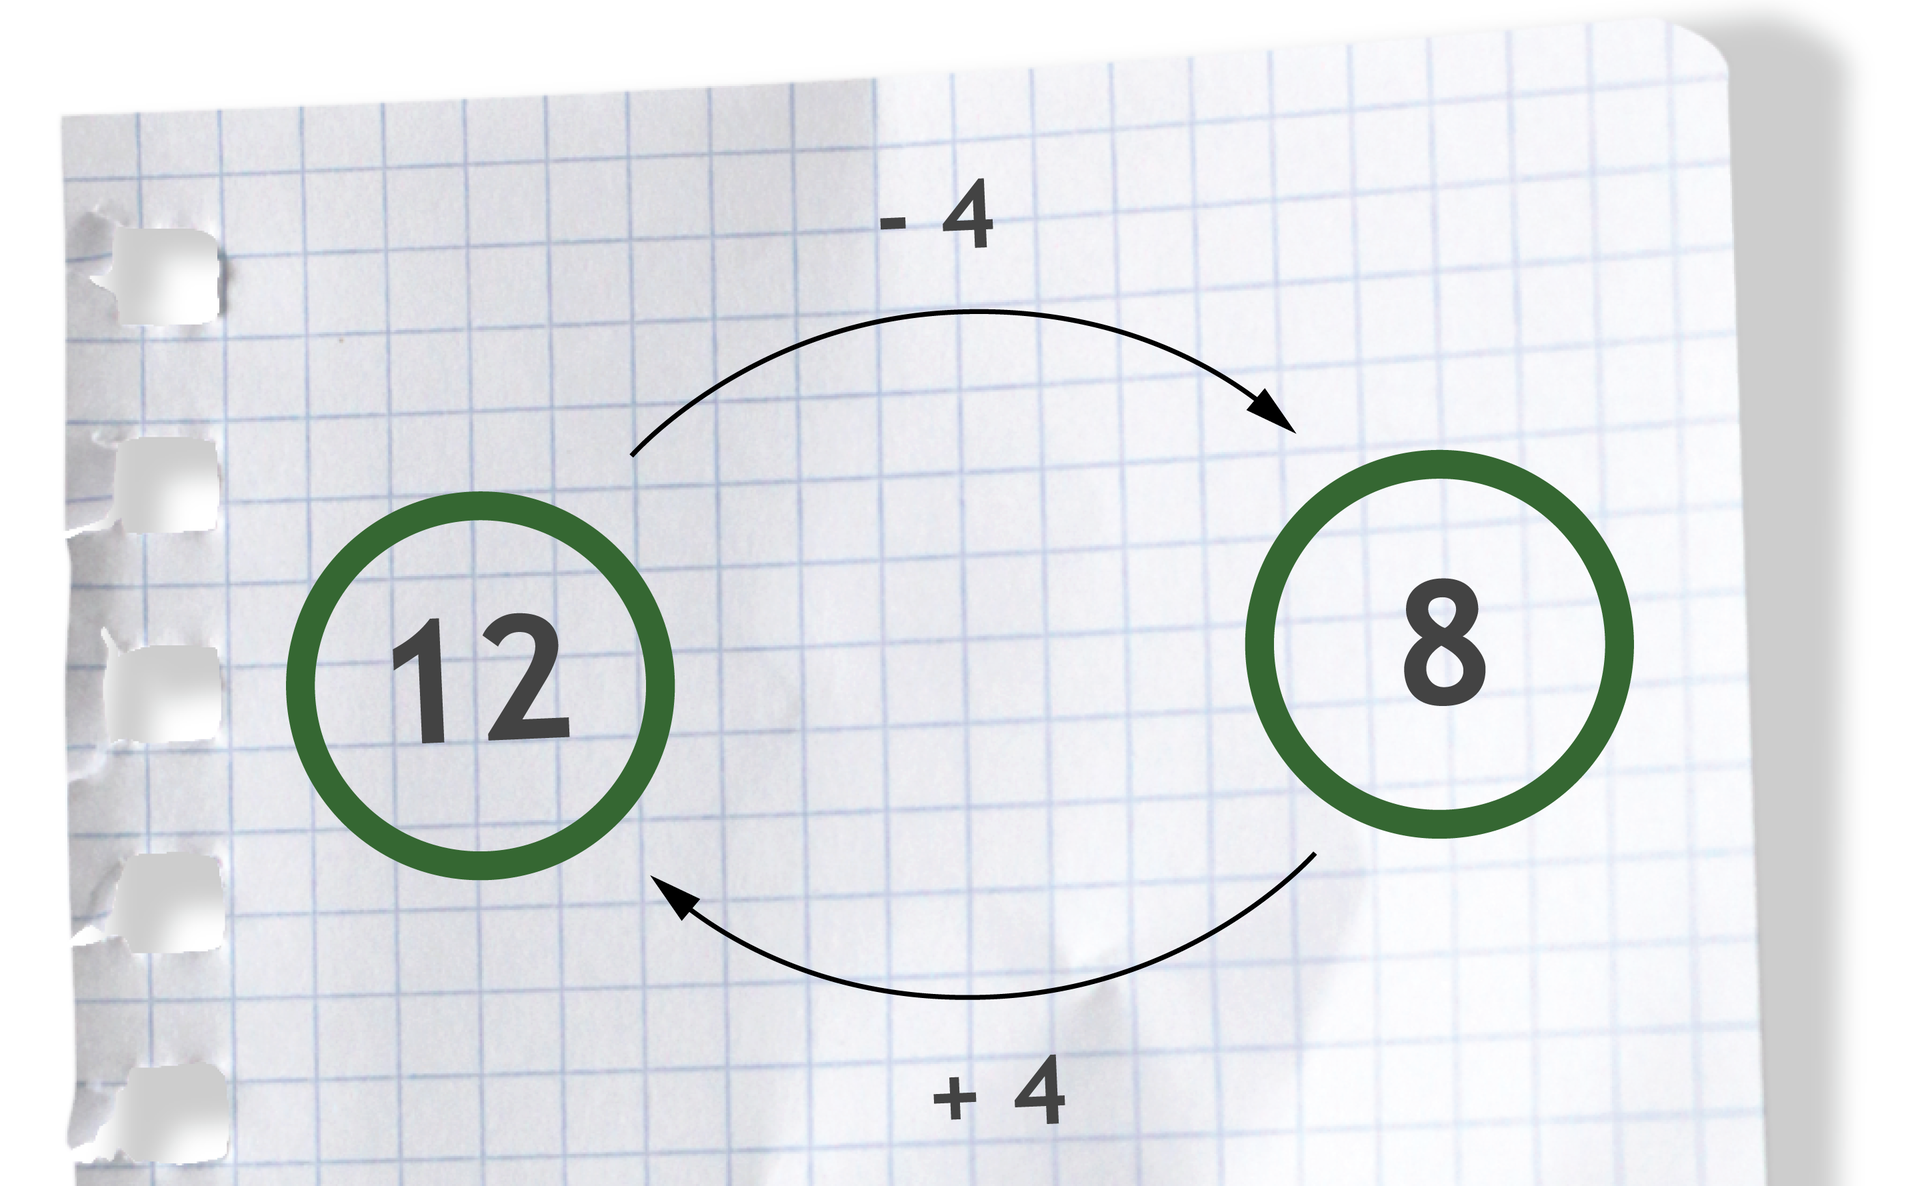 Graf pokazuje, że dodawanie i odejmowanie są wzajemnie odwrotne. Liczba 12, nad strzałką w prawo liczba - 4, daje liczbę 8. Liczba 8, pod strzałką w lewo +4, daje liczbę 12.